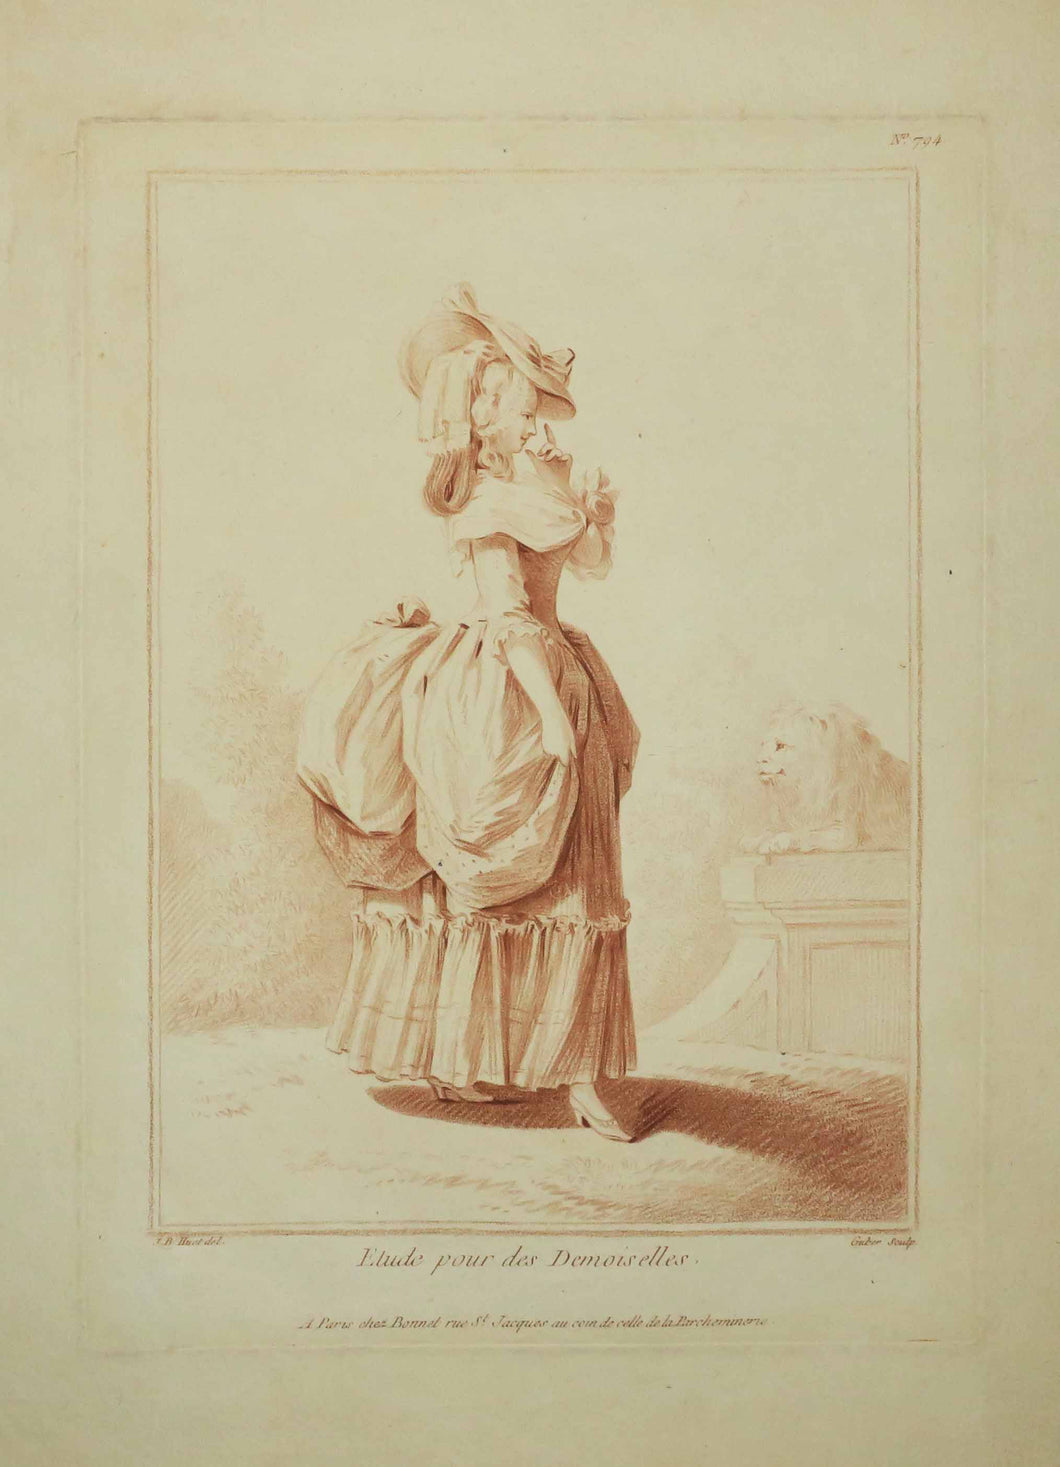 Etude pour les Demoiselles: Jeune fille, en pied, debout, grand chapeau et robe à paniers, et à droite un lion sculpté. 